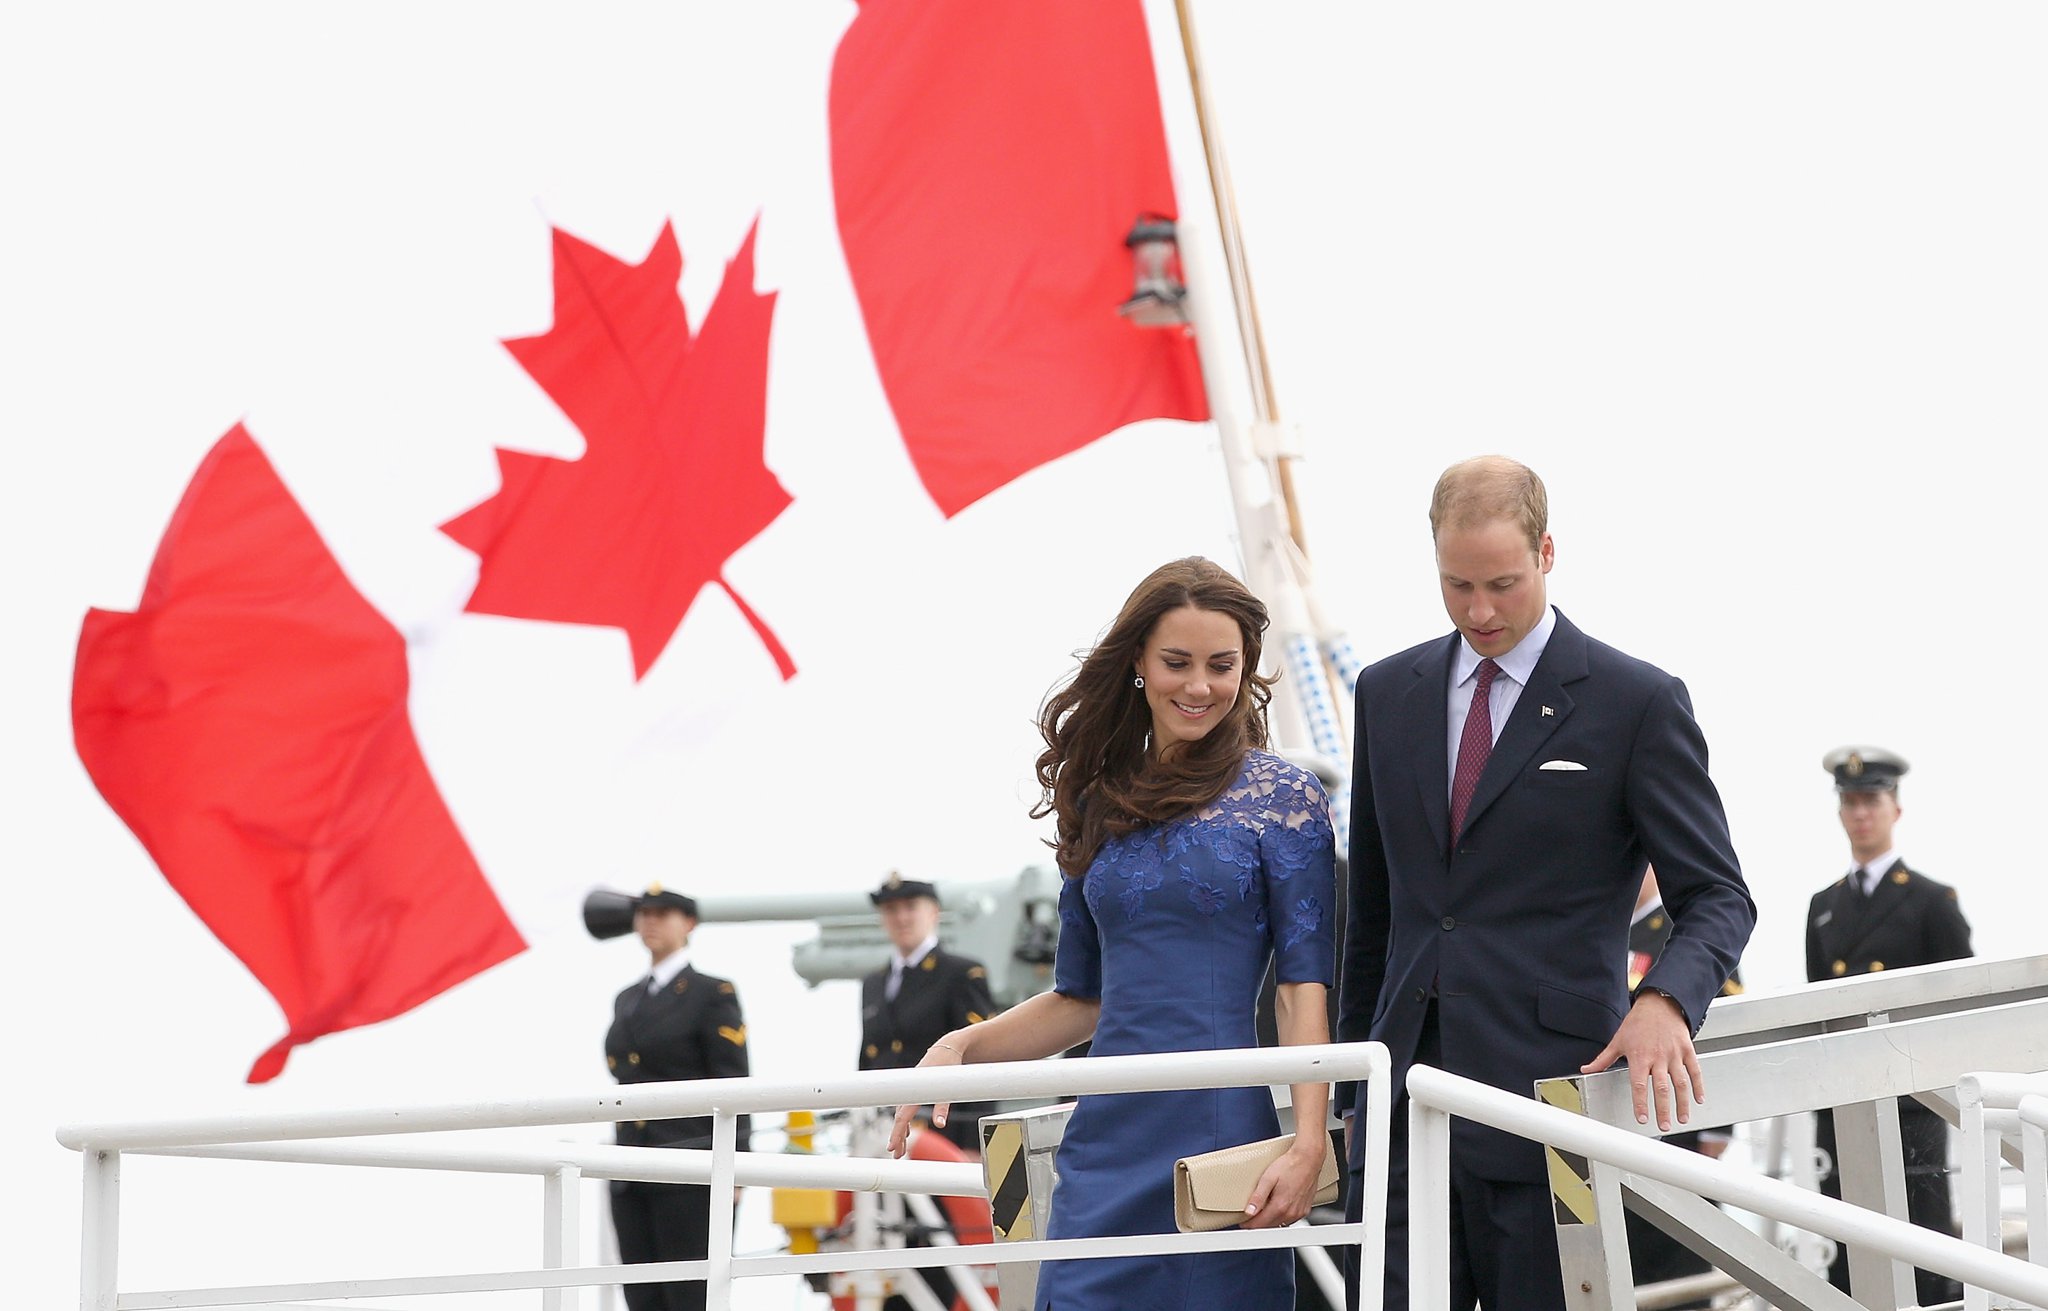 Кенсингтонский дворец подтвердил даты королевского тура по Канаде